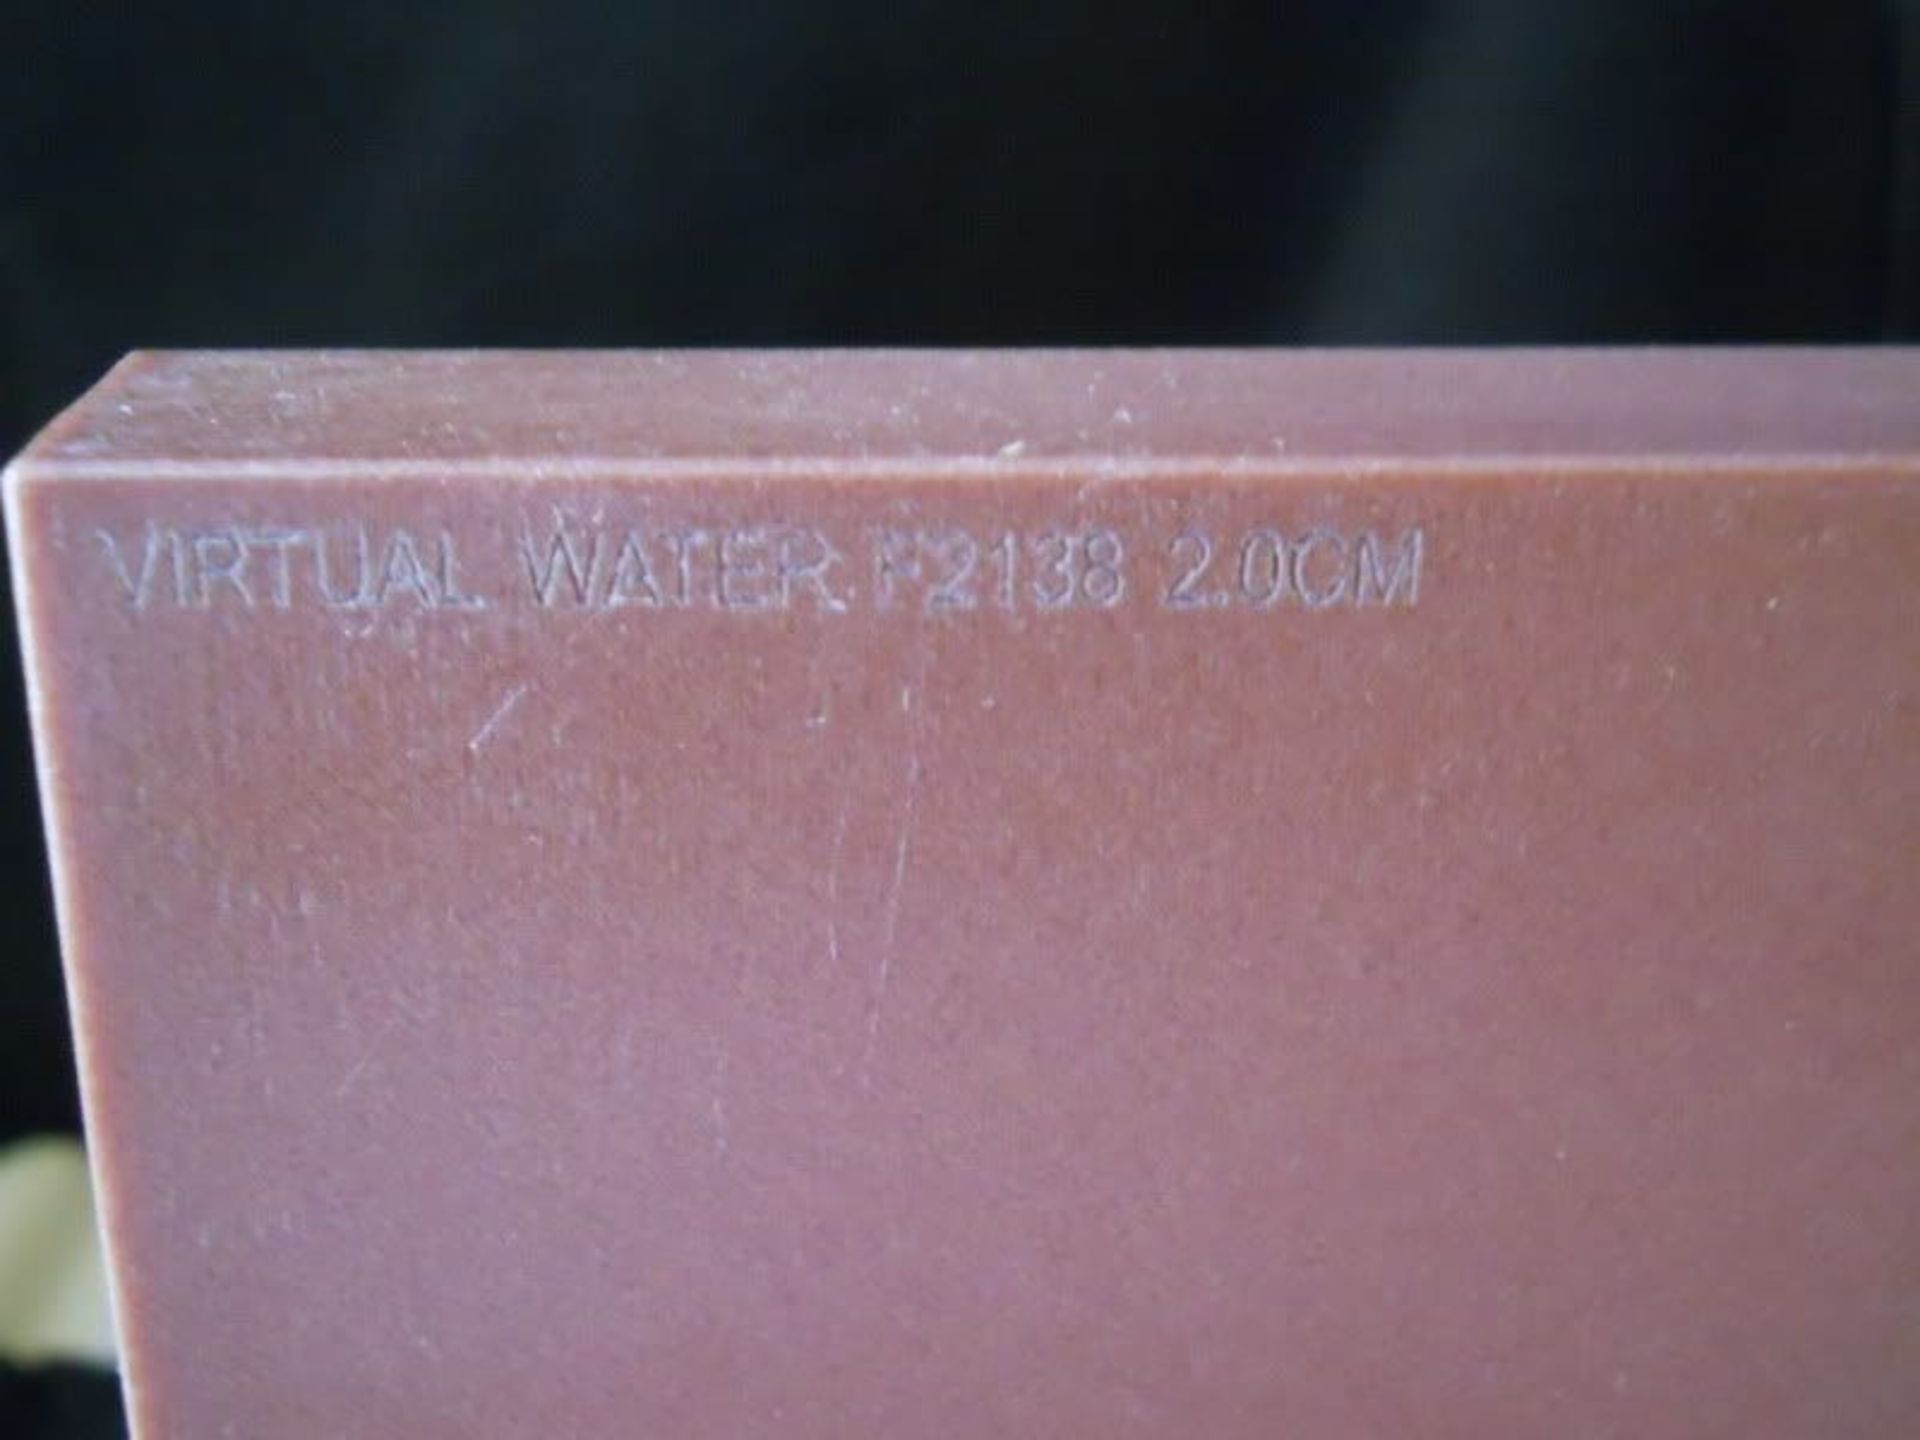 Nomos Virtual Water Phantom F2138 2cm, Qty 1, 221020695774 - Image 2 of 4